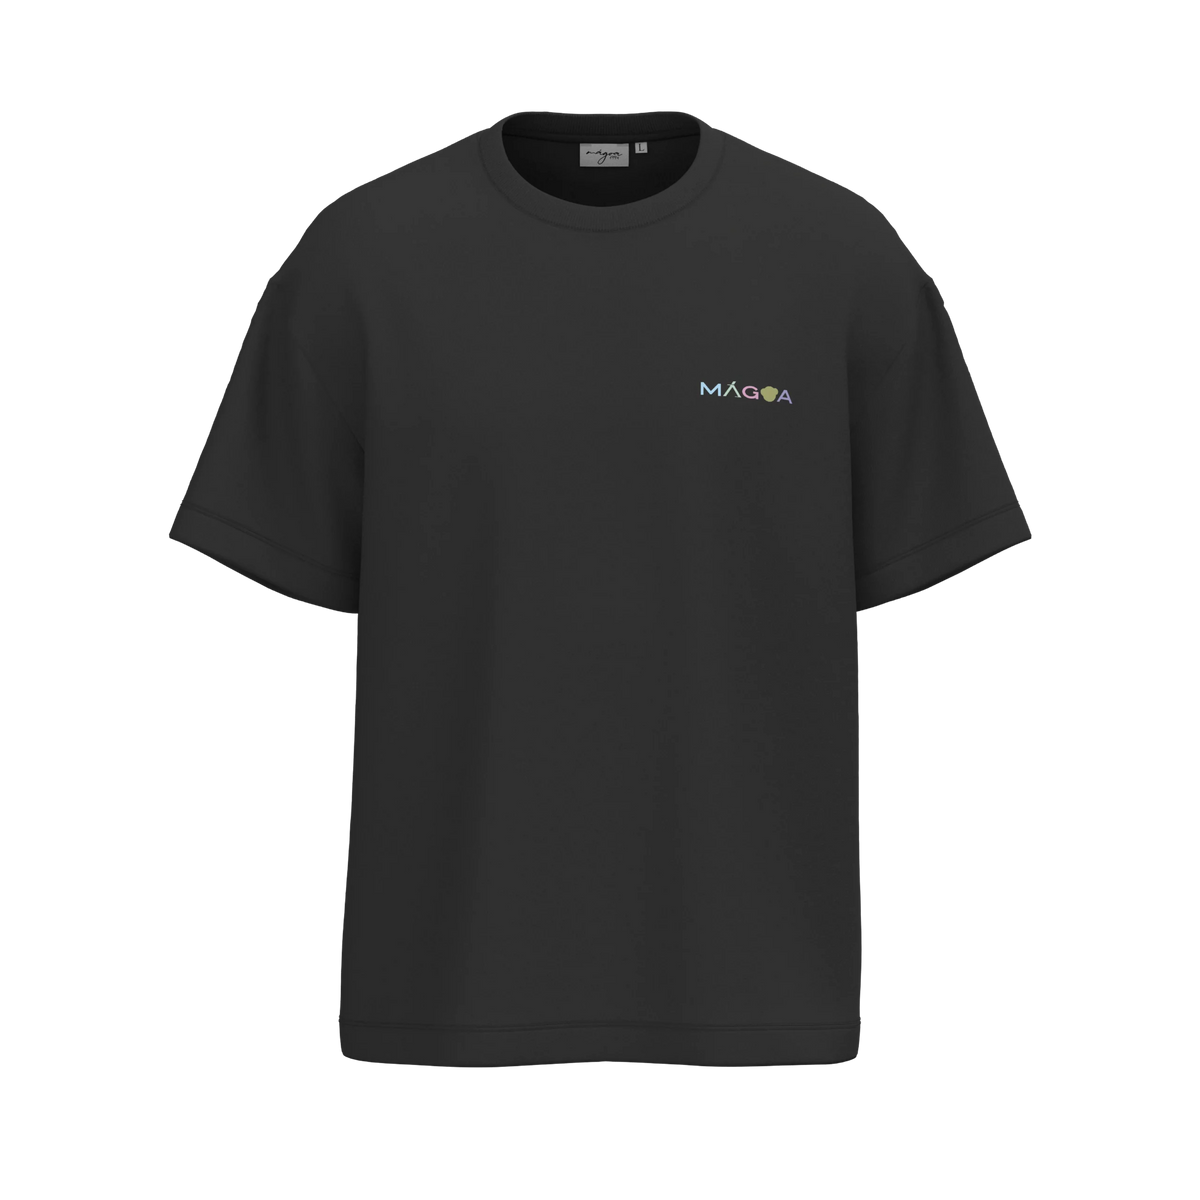 Mágoa Rainbow T-Shirt Black - Soulsideshop